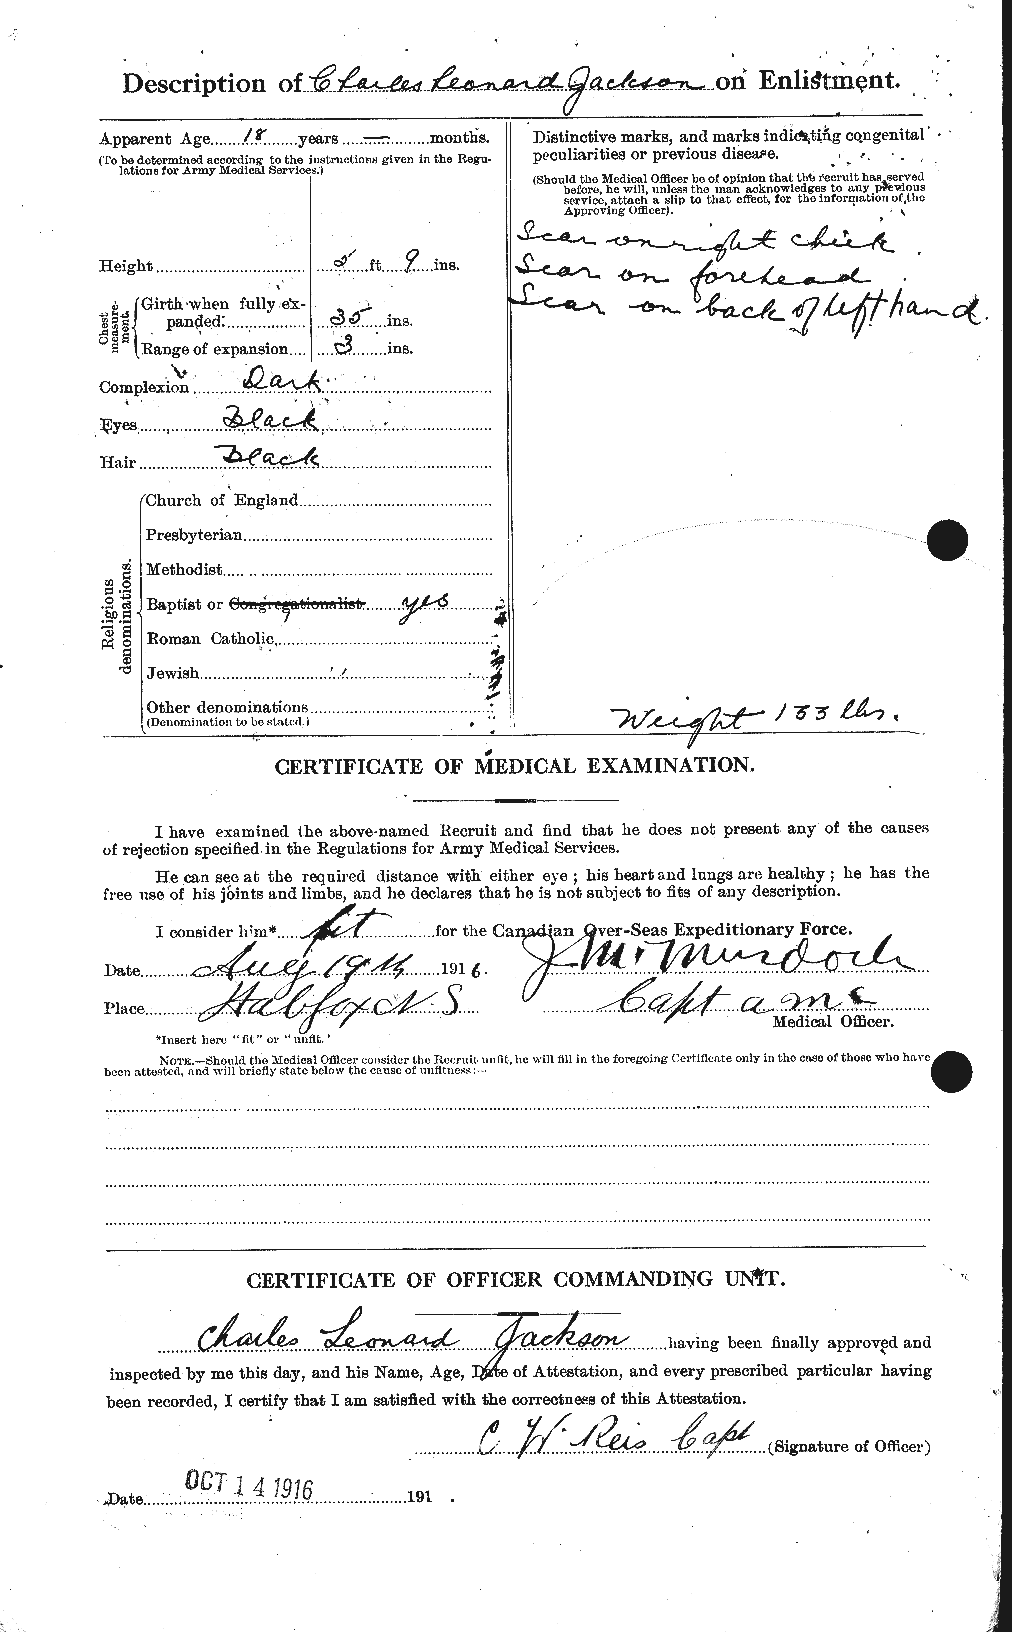 Dossiers du Personnel de la Première Guerre mondiale - CEC 411827b